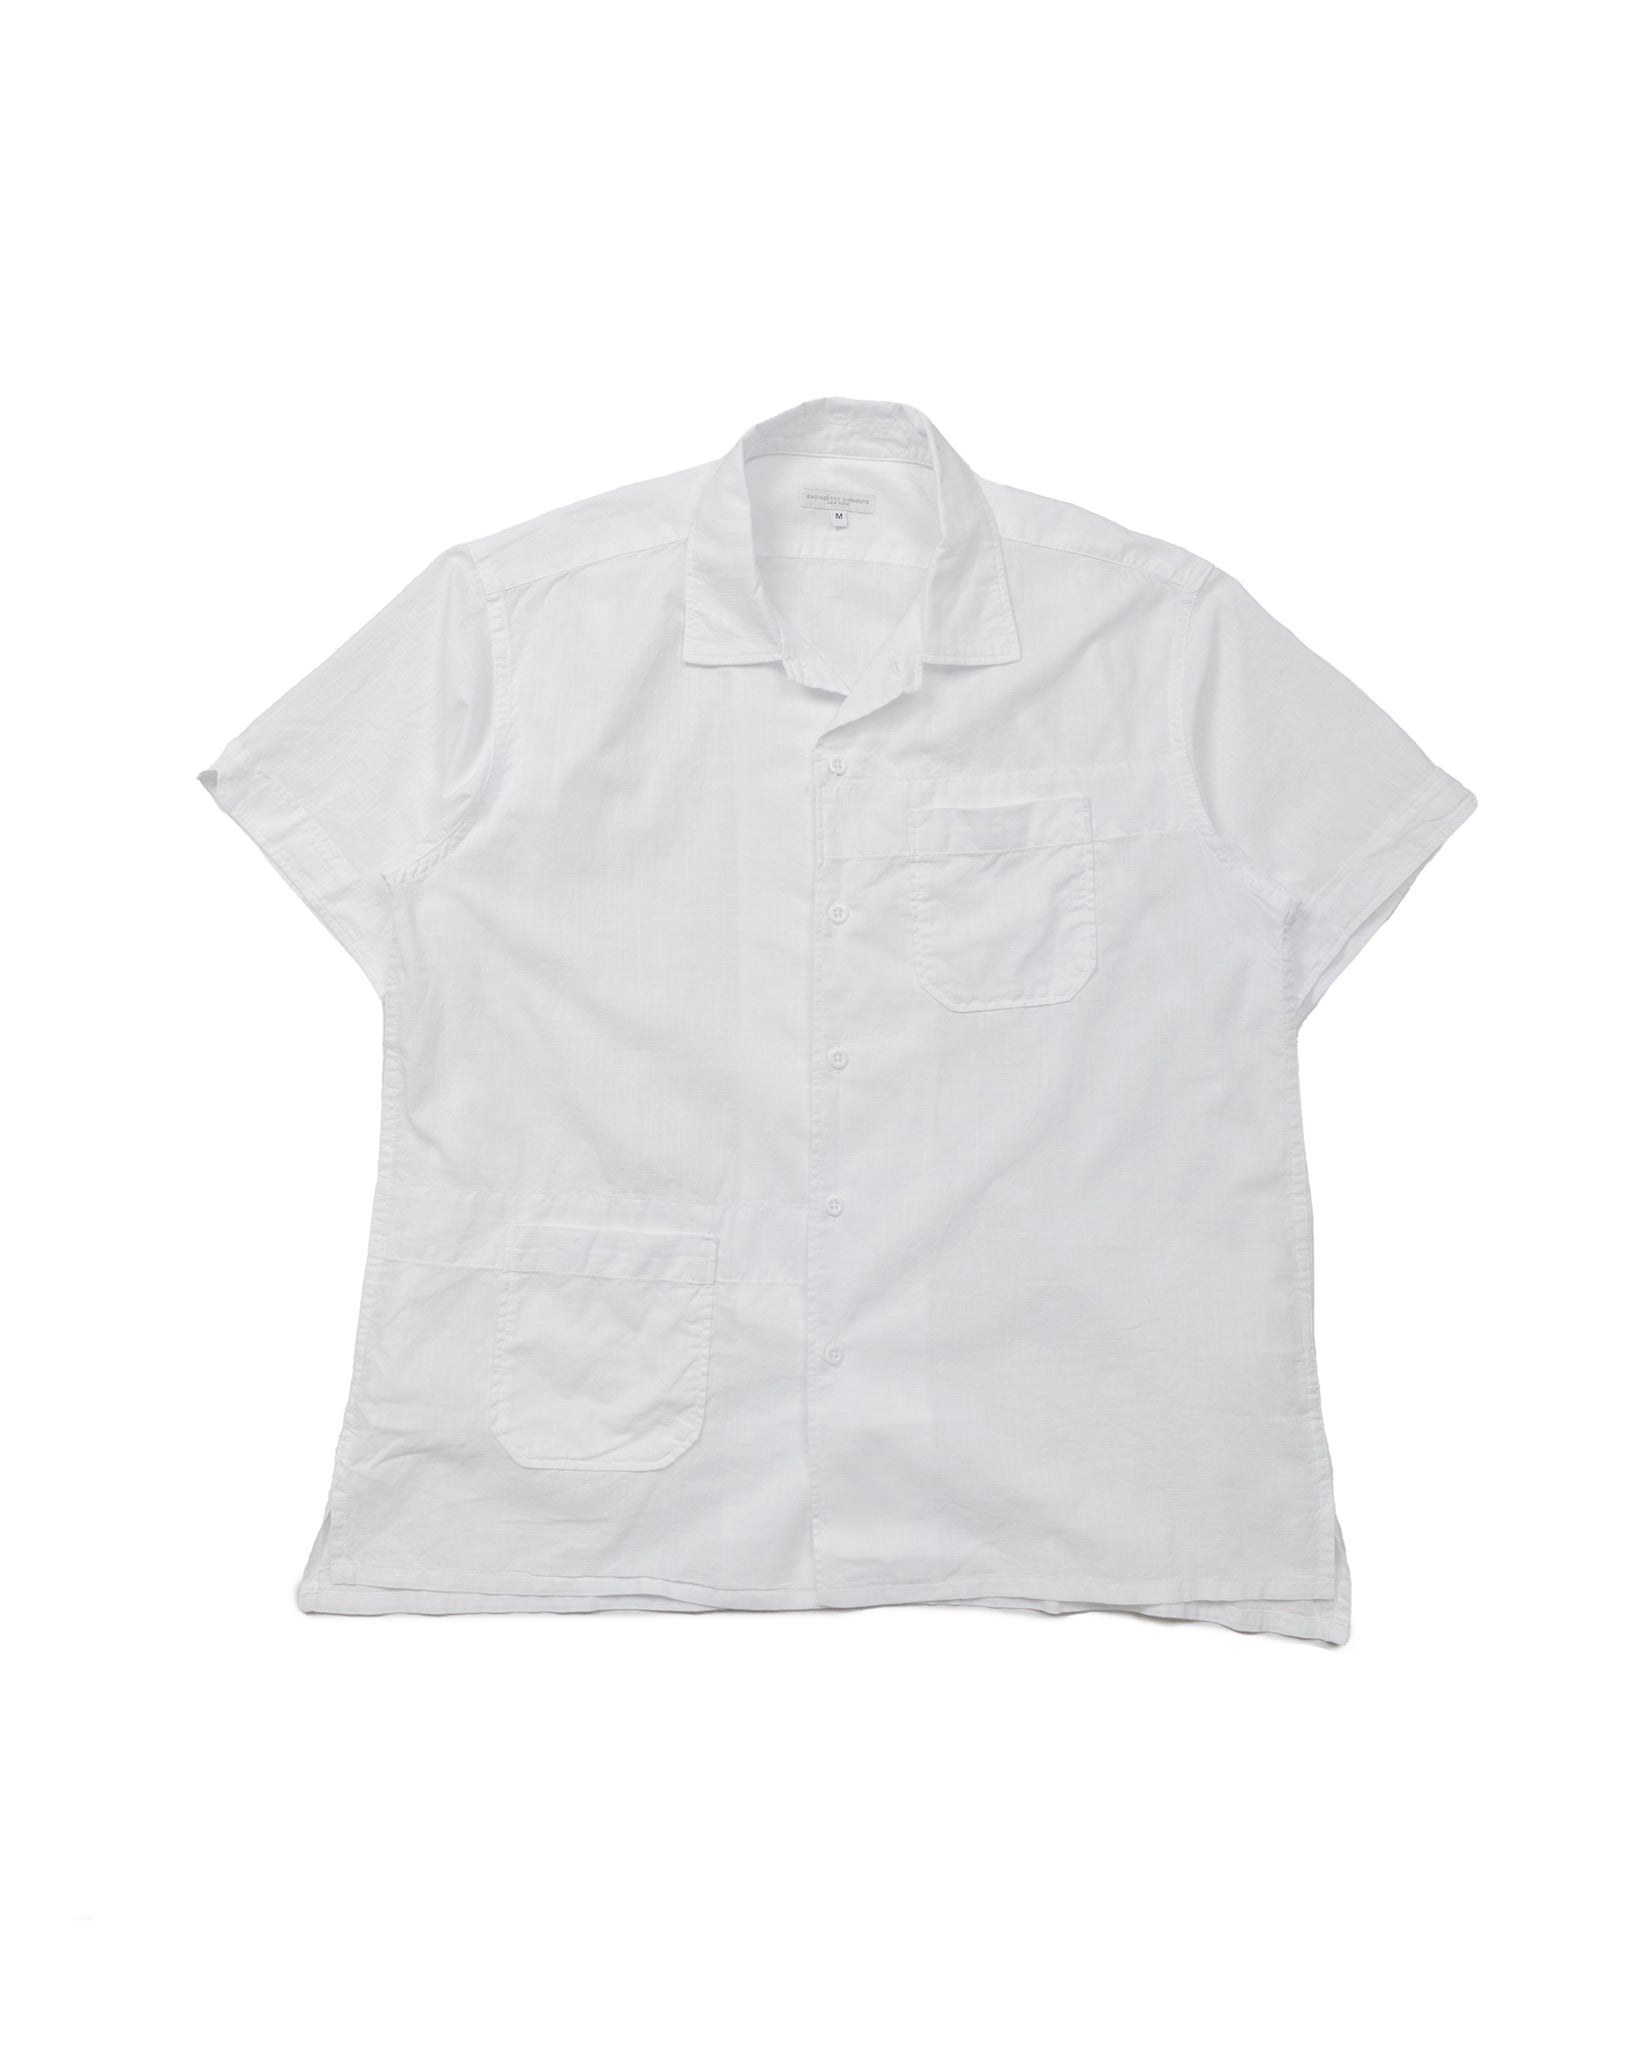 Engineered Garments Camp Shirt White Cotton Handkerchief